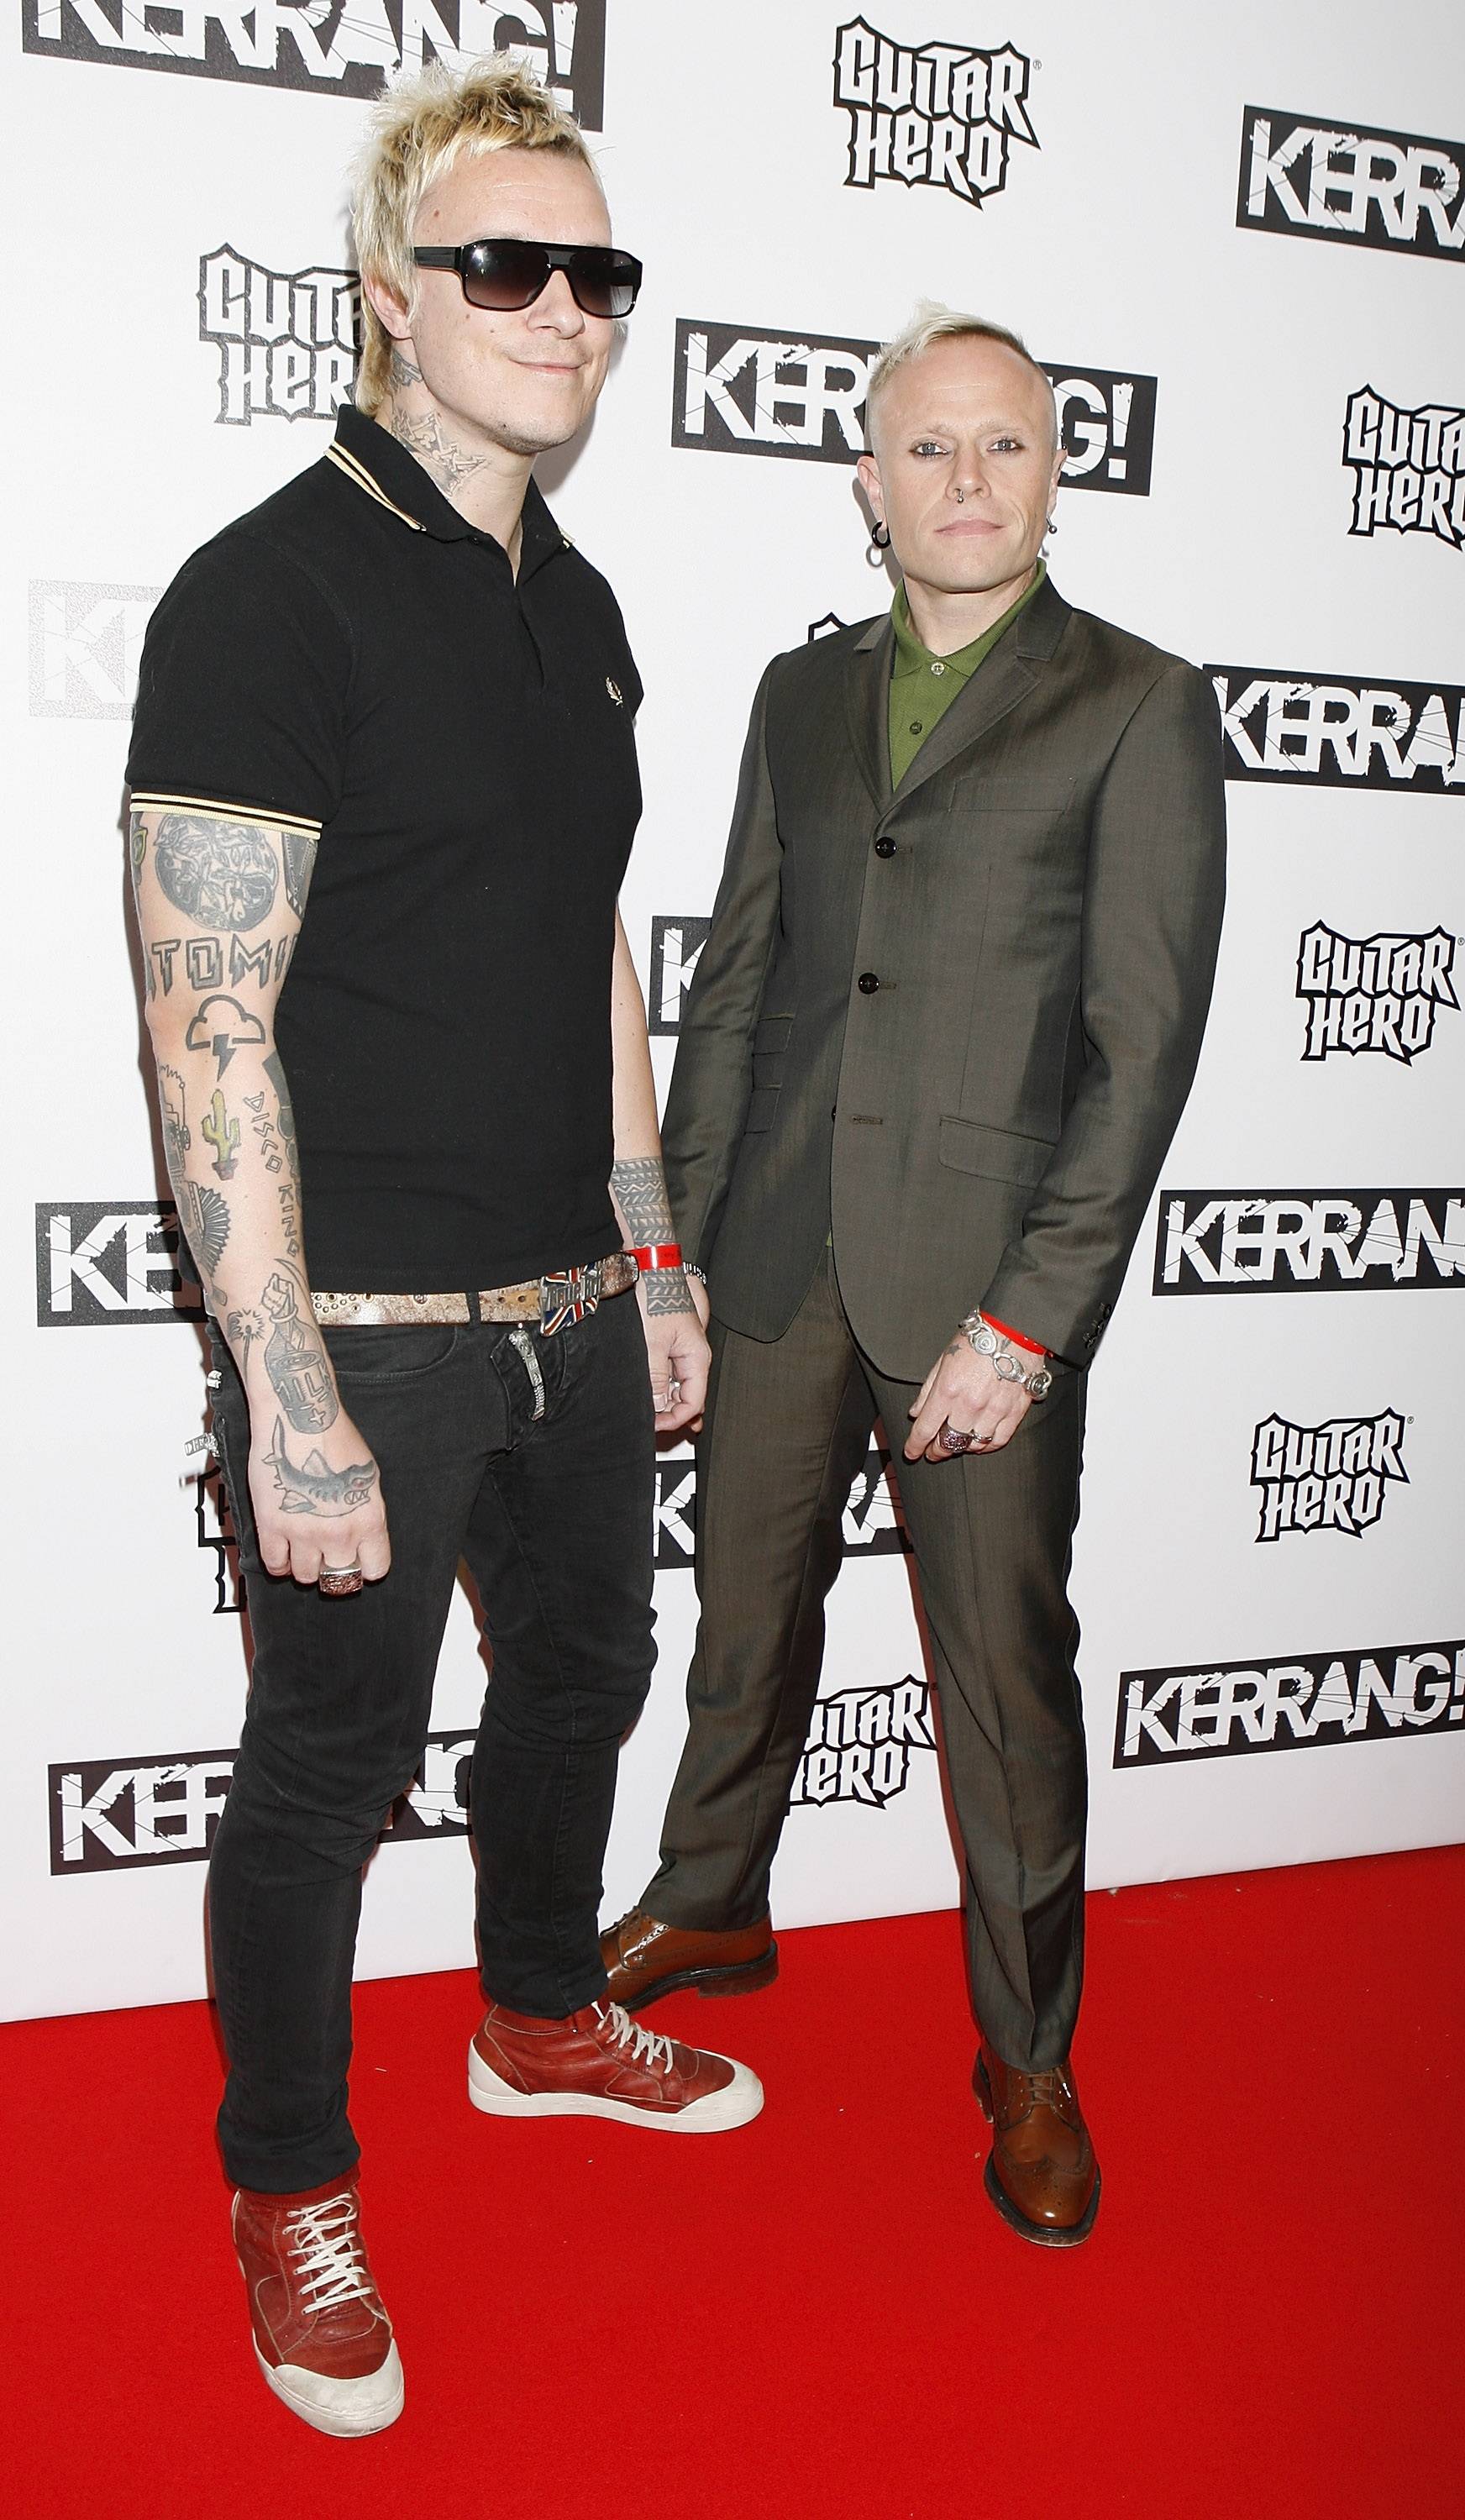 Kerrang Awards 2009 - London